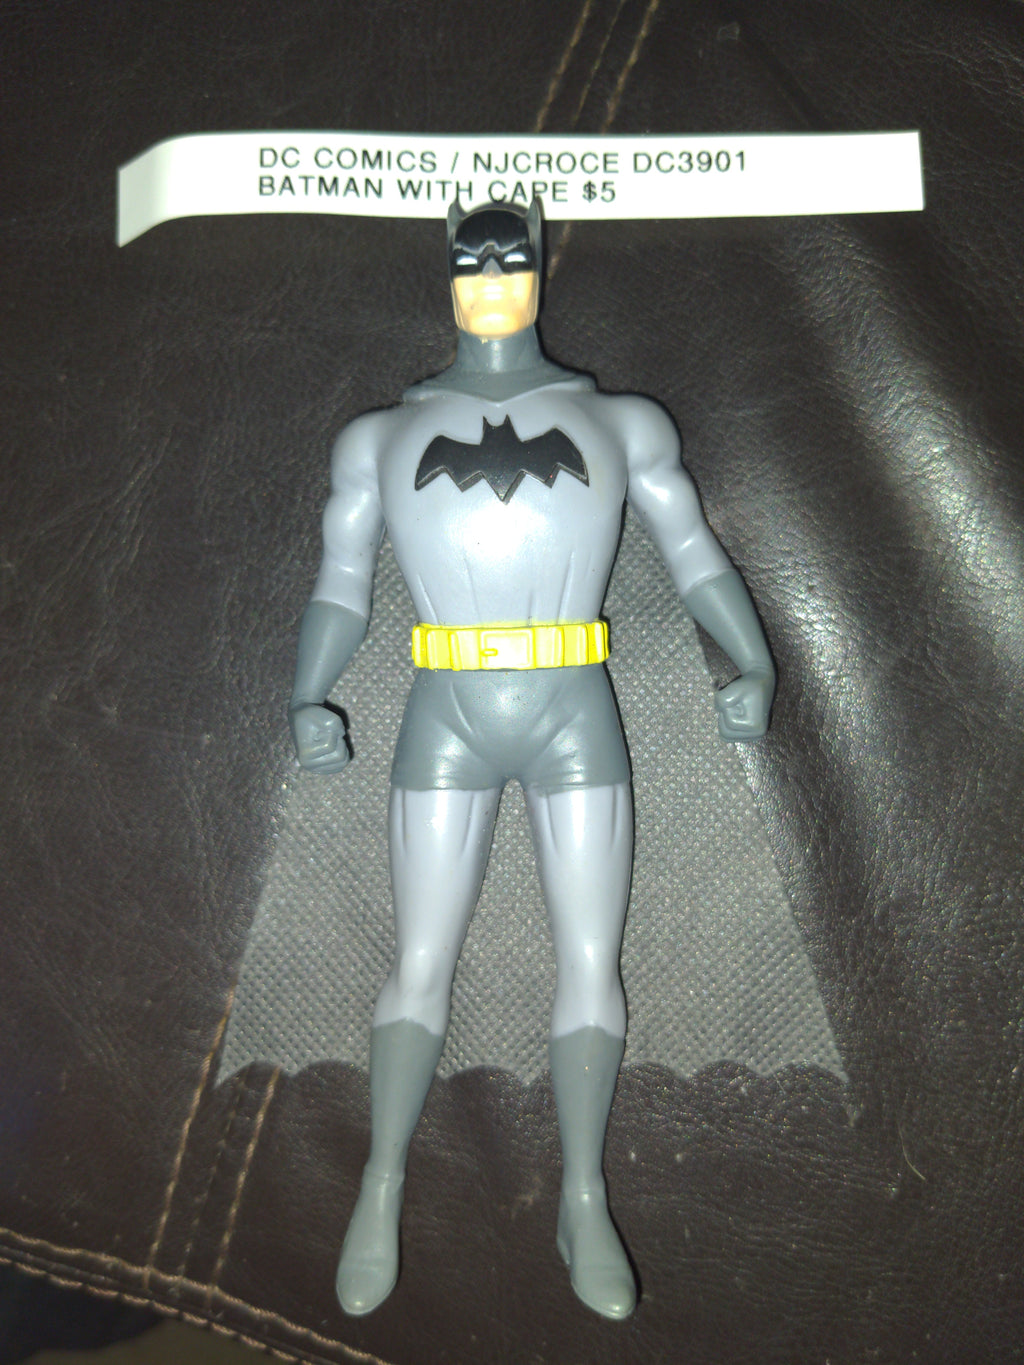 Batman Bendable Figure with Cape - NJCroce DC3901